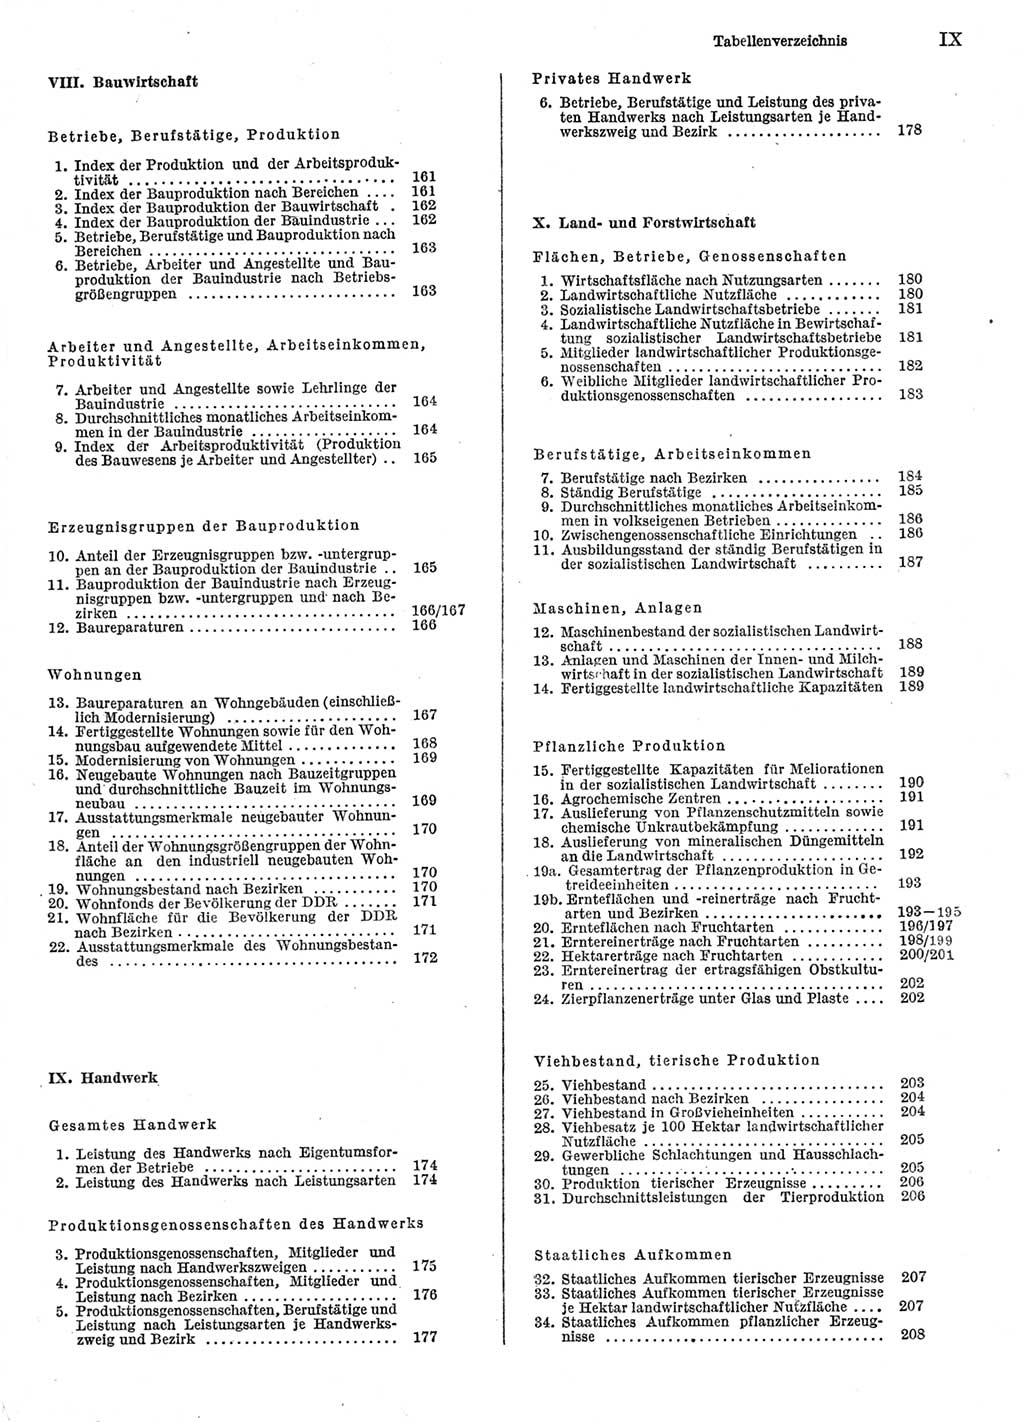 Statistisches Jahrbuch der Deutschen Demokratischen Republik (DDR) 1986, Seite 9 (Stat. Jb. DDR 1986, S. 9)